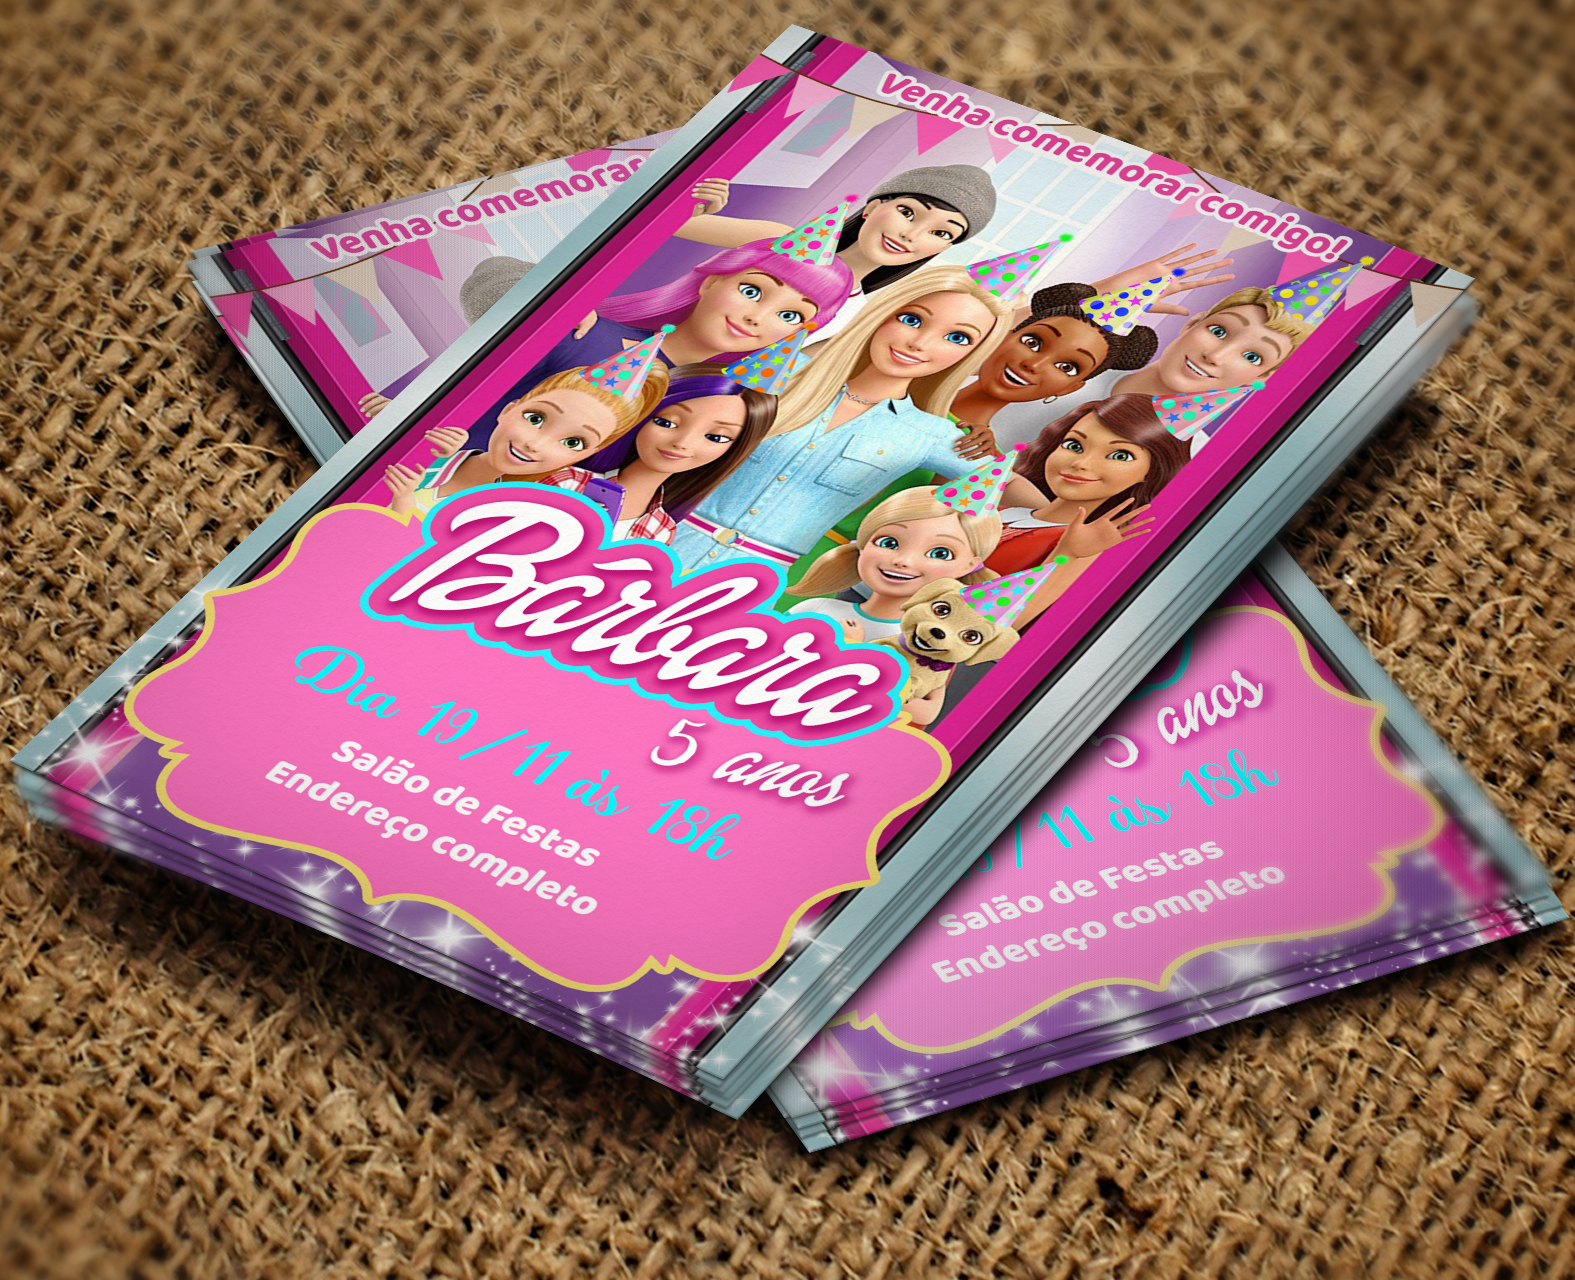 Convite Digital Barbie Dreamhouse Adventures – Montando a Sua